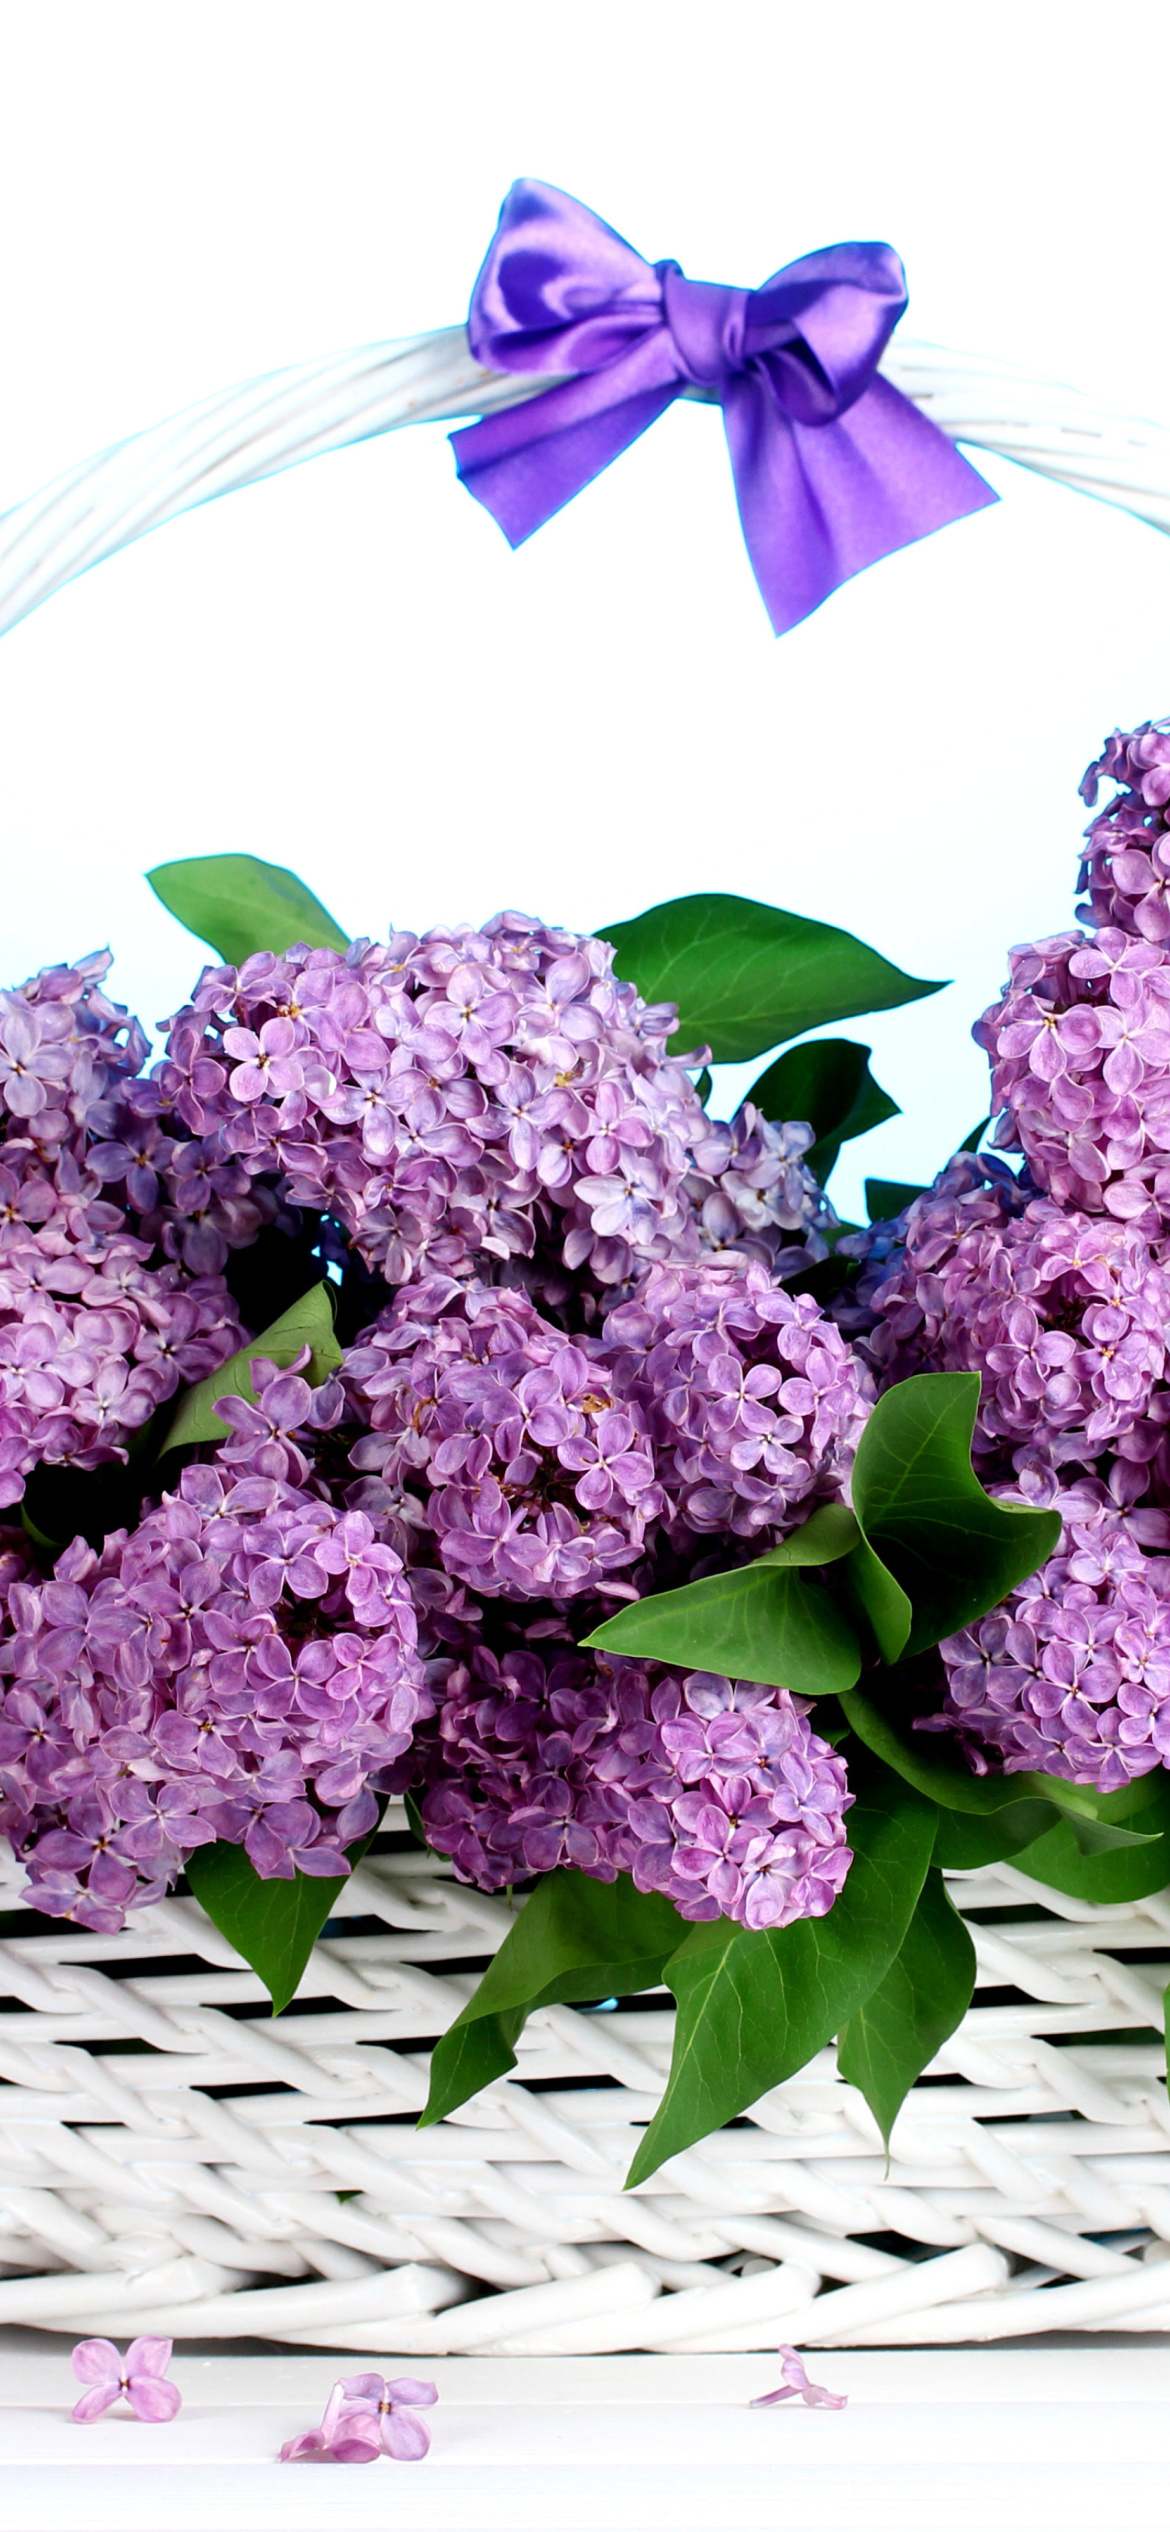 Sfondi Baskets with lilac flowers 1170x2532